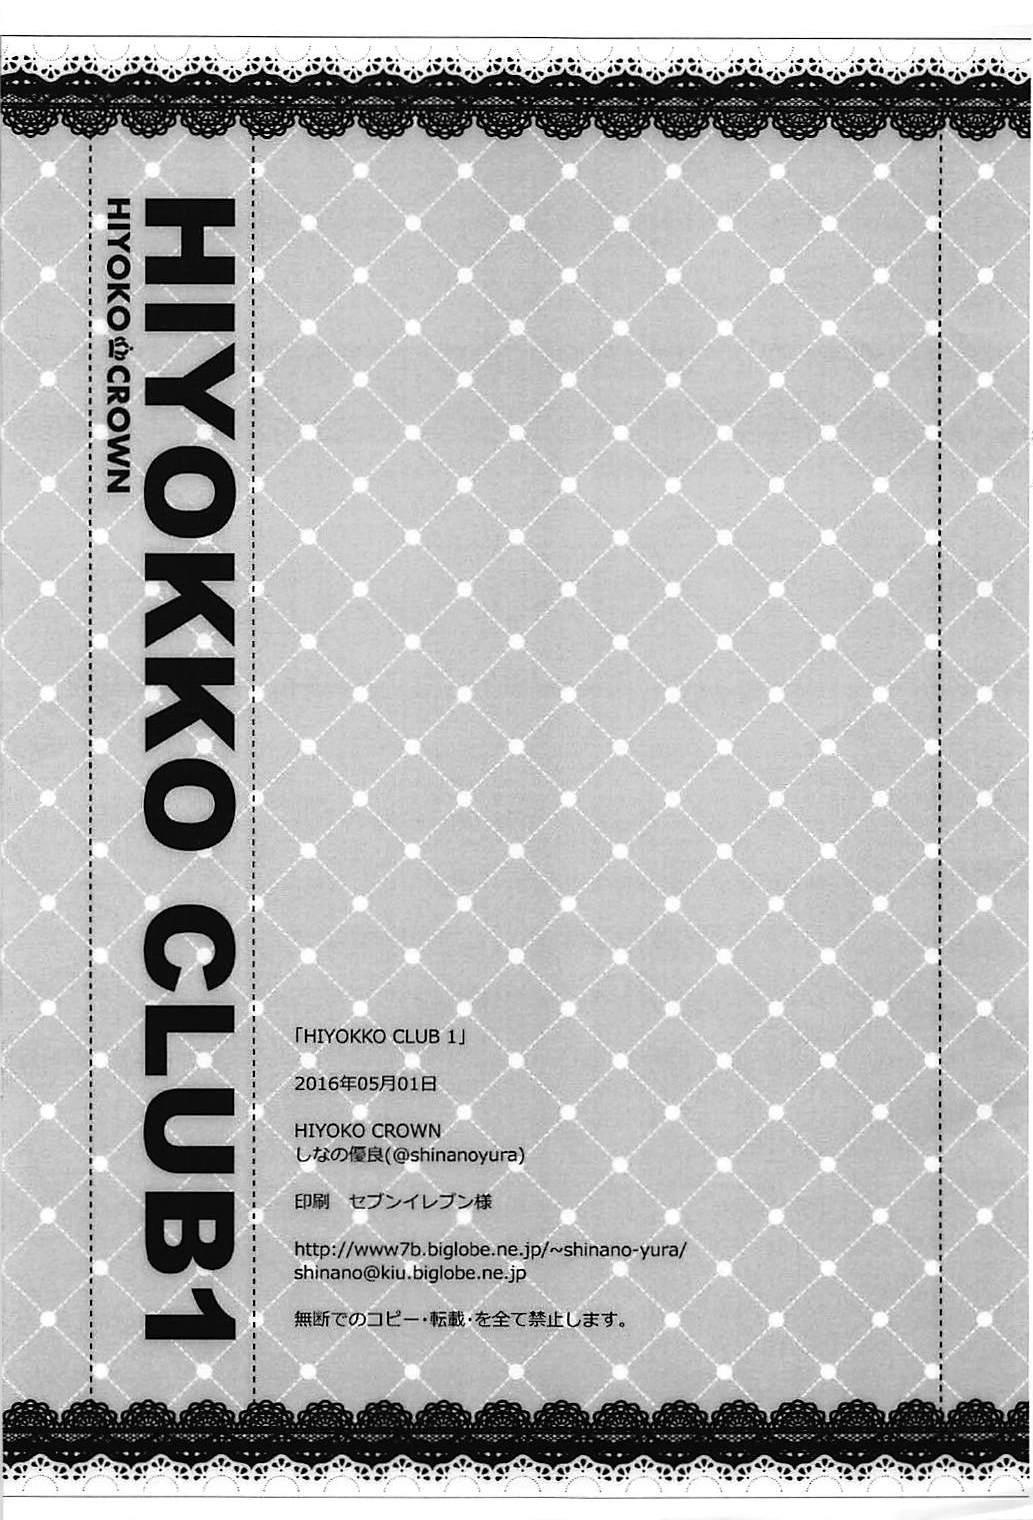 HIYOKKO CLUB 1 5